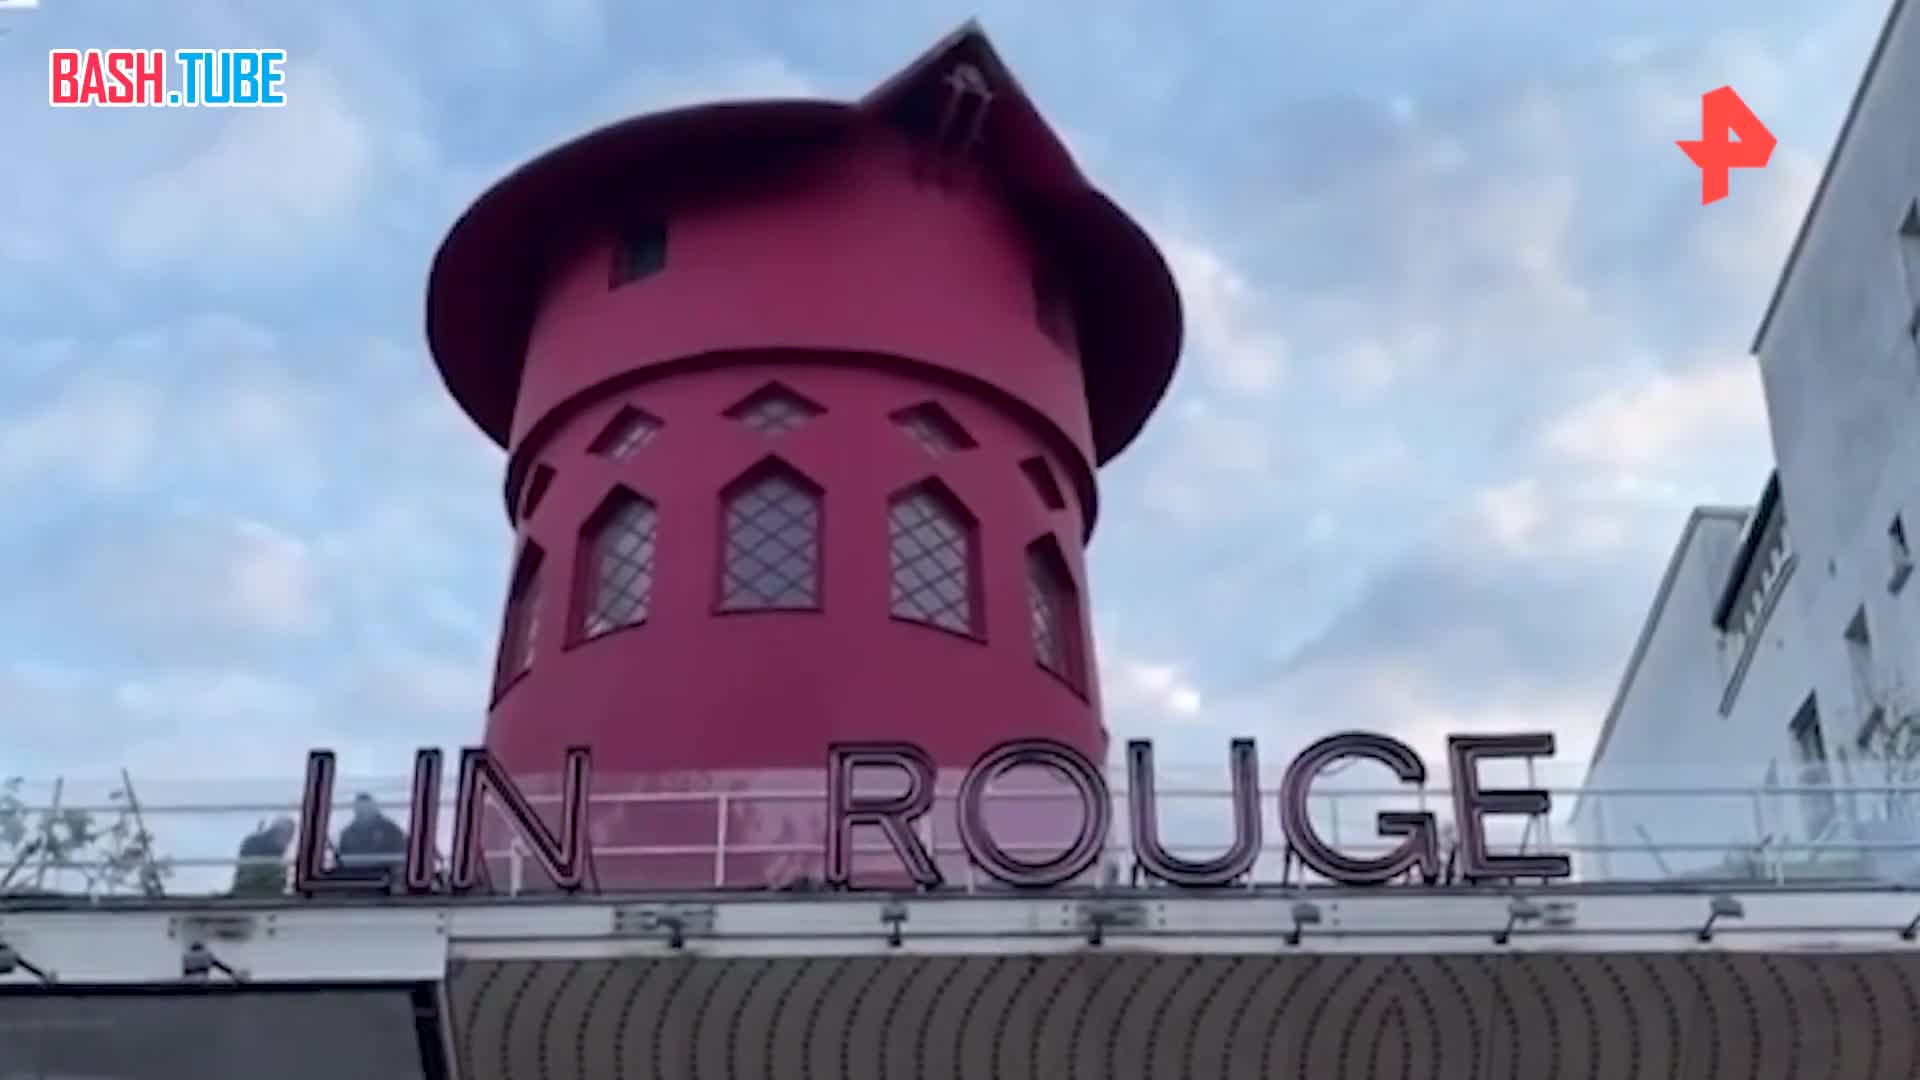  Лопасти мельницы известного парижского кабаре «Мулен Руж» рухнули сегодня ночью, сообщает BFMTV